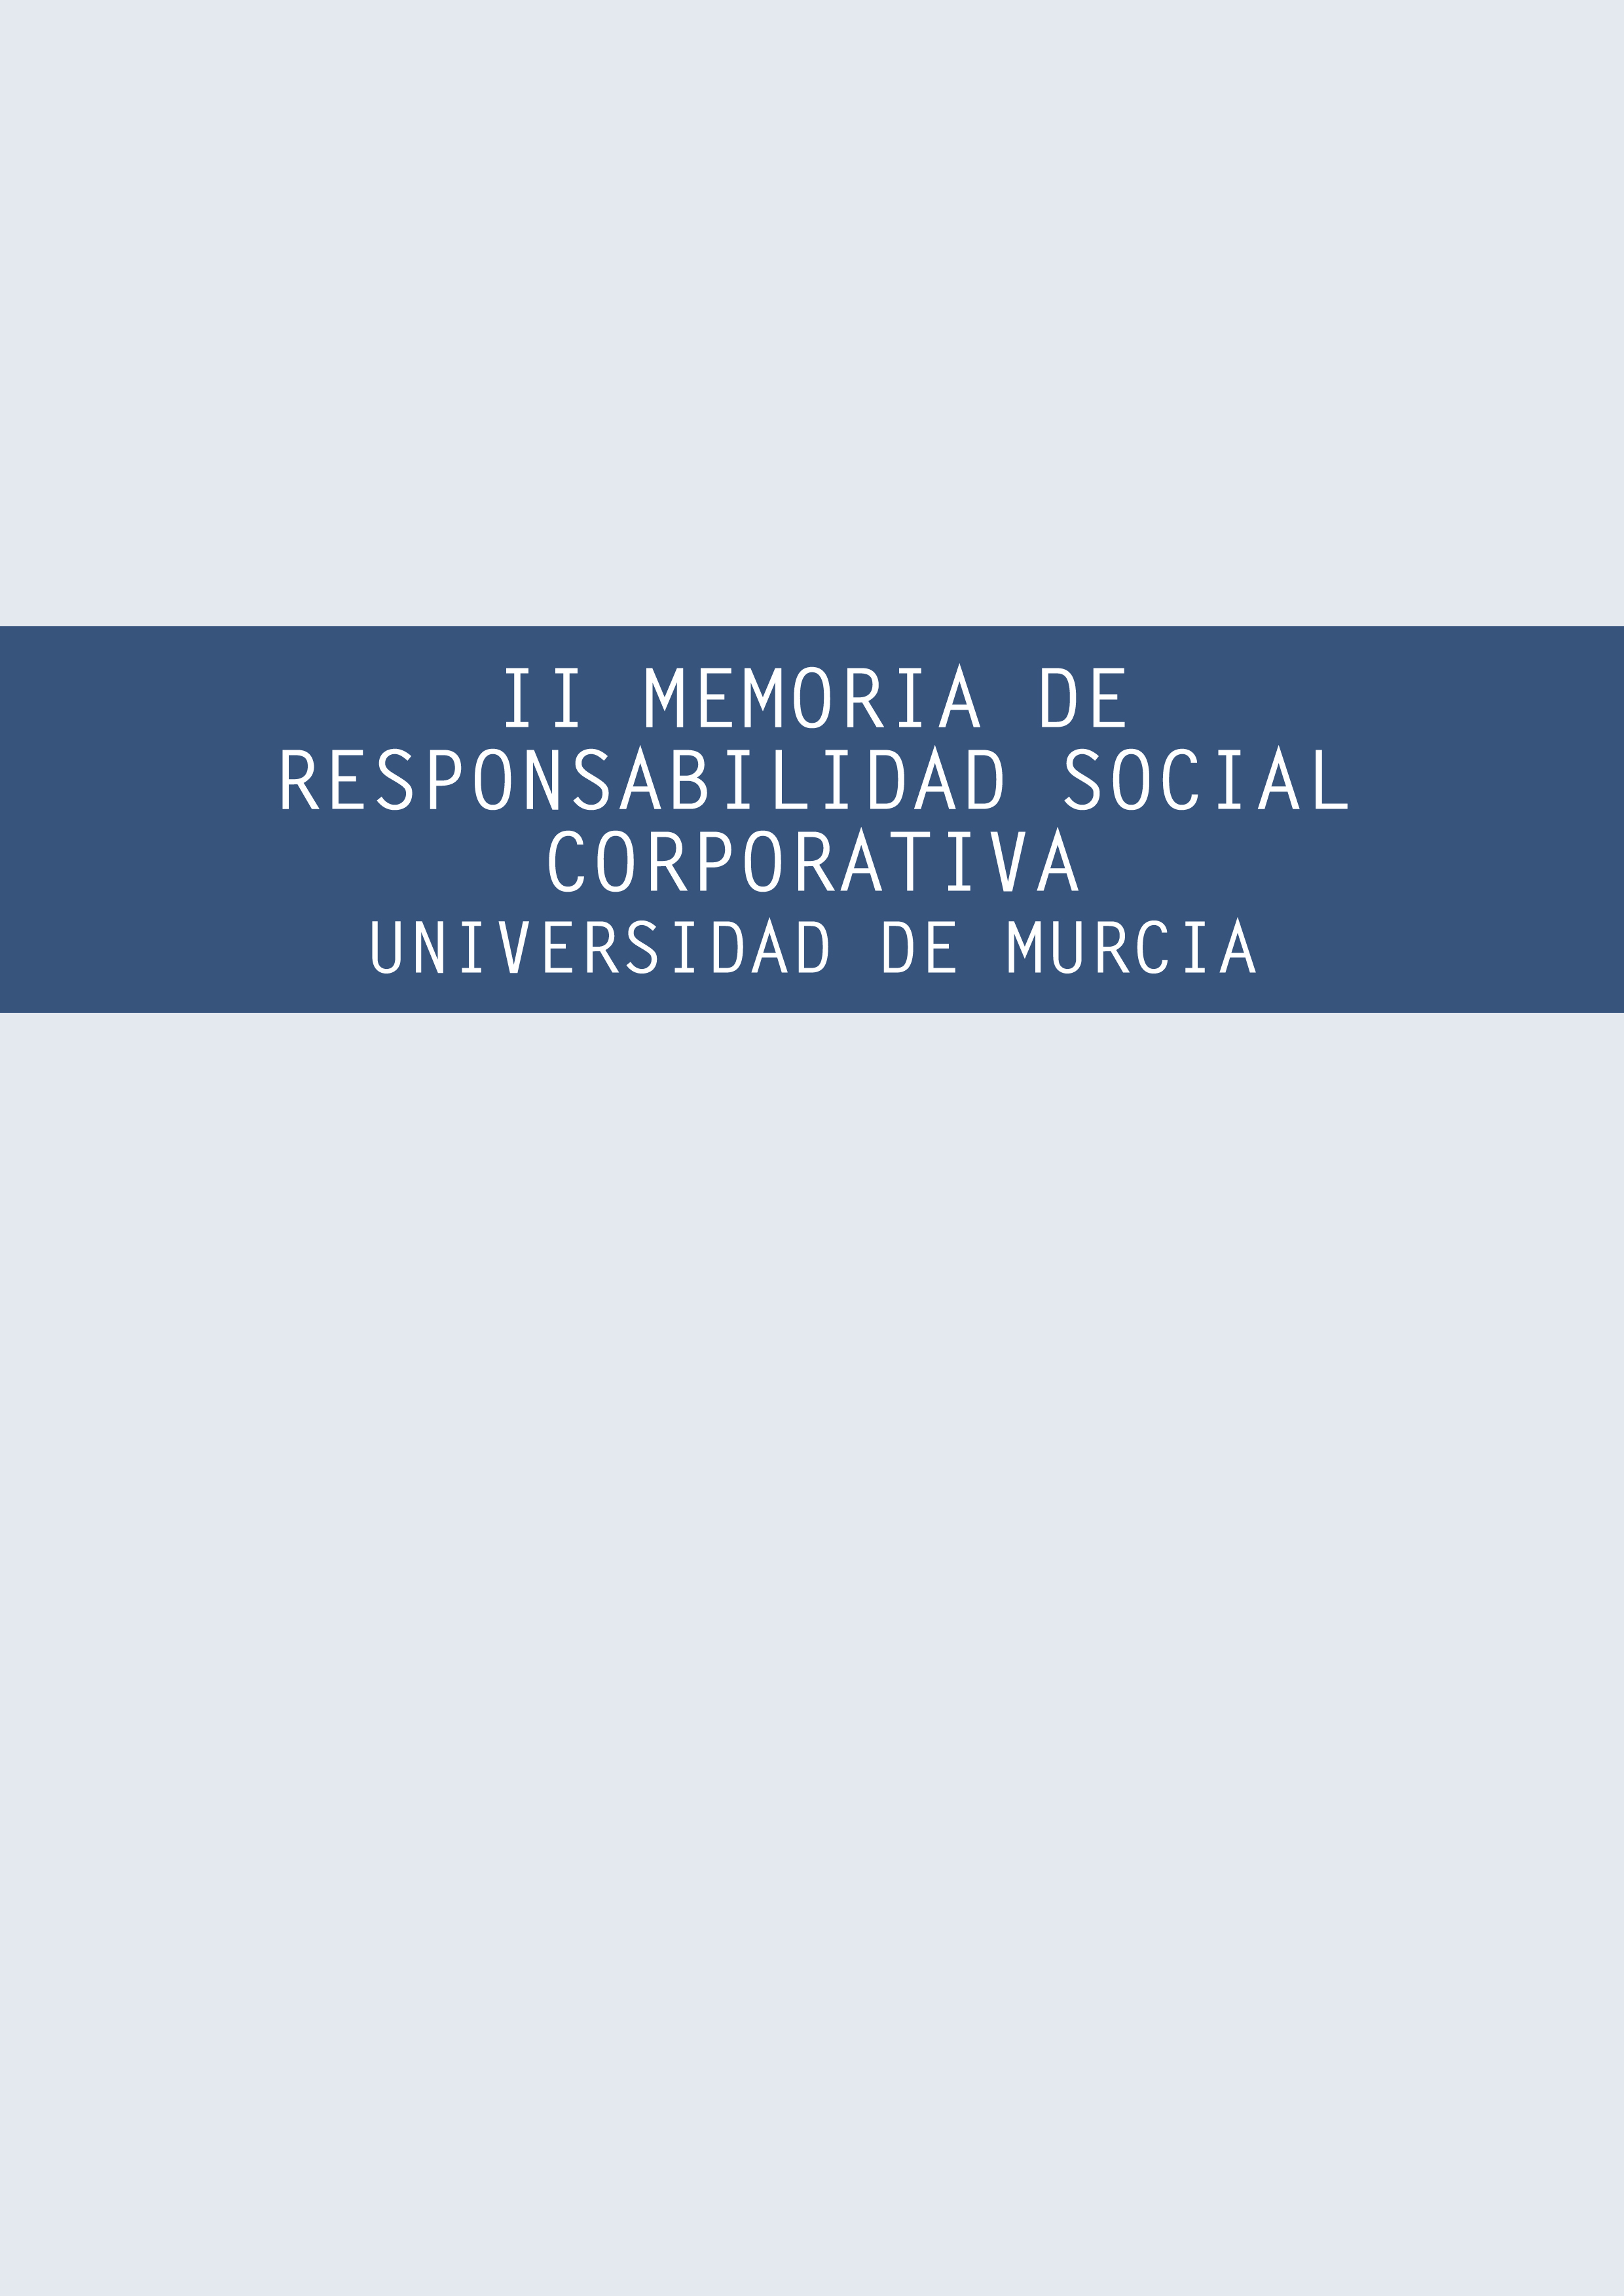 II Memoria de Responsabilidad Social Corporativa de la Universidad de Murcia 2011-2012